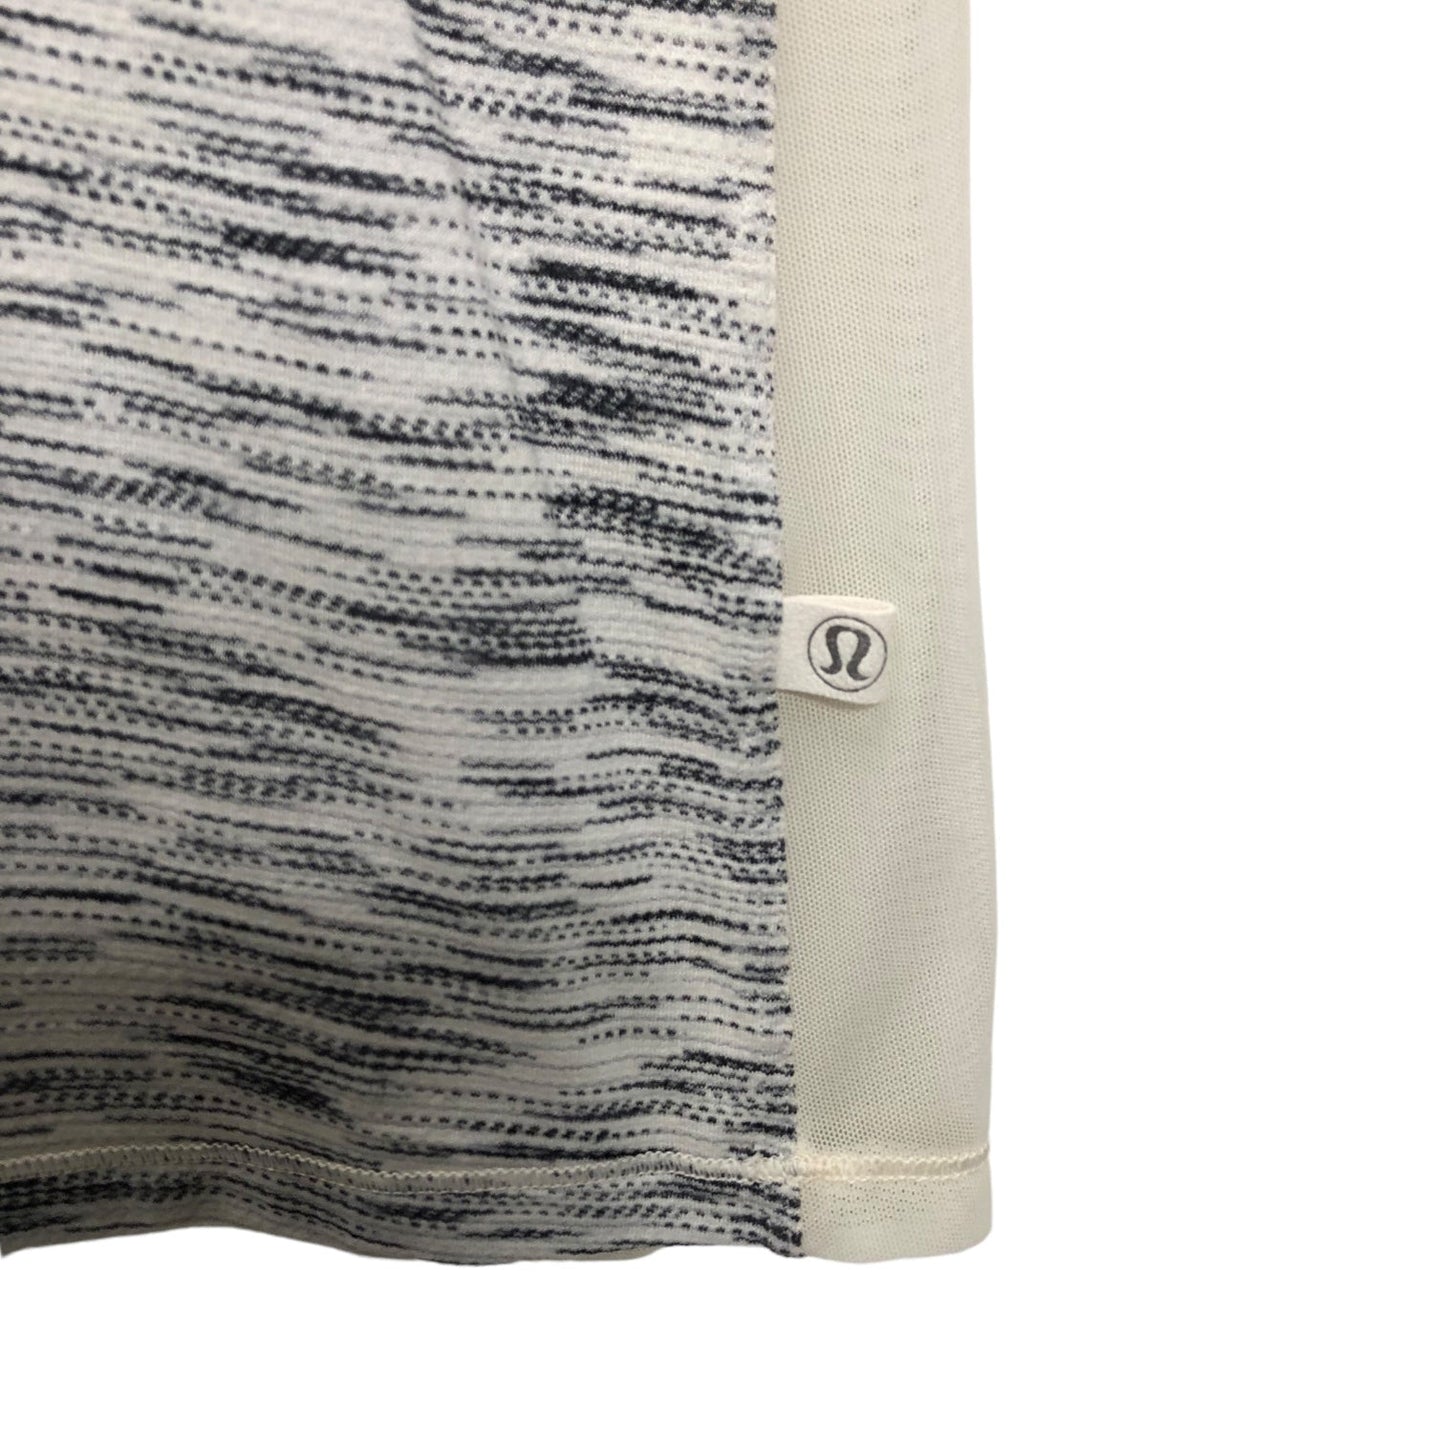 Grey & White Athletic Top Short Sleeve Lululemon, Size 6